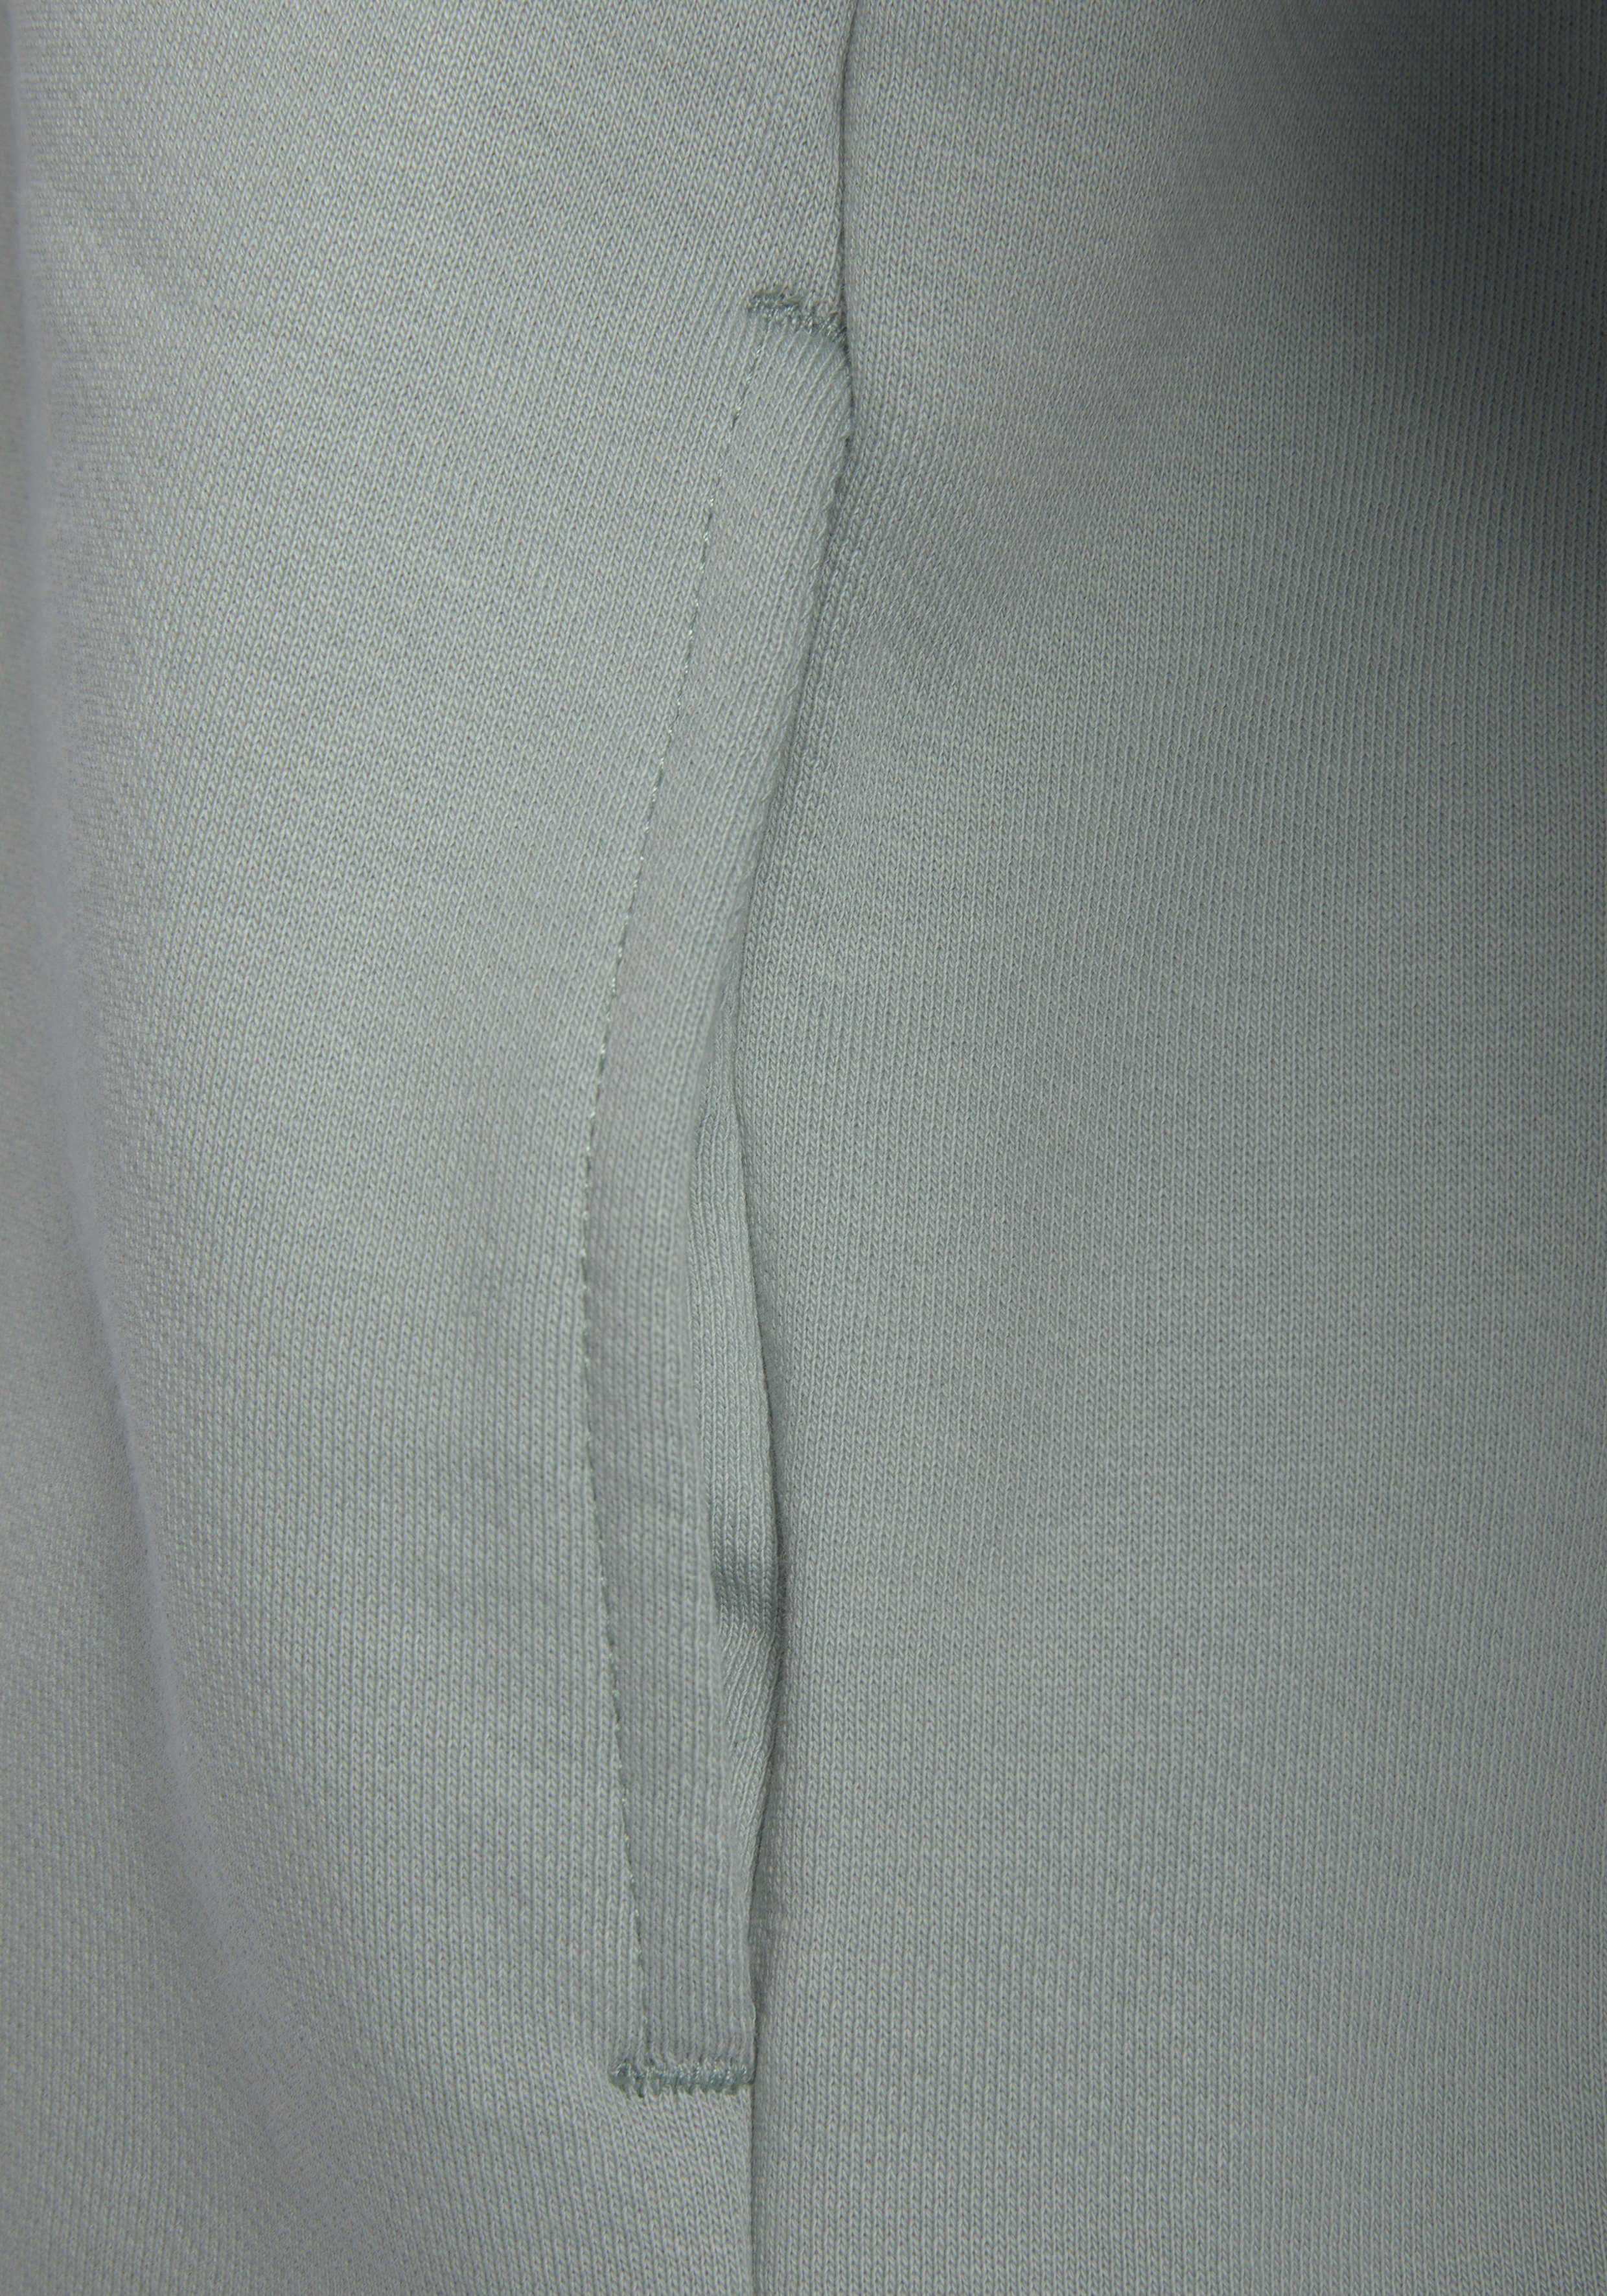 graublau aus Loungeanzug organischer LASCANA Loungewear, Sweatjacke Baumwolle,